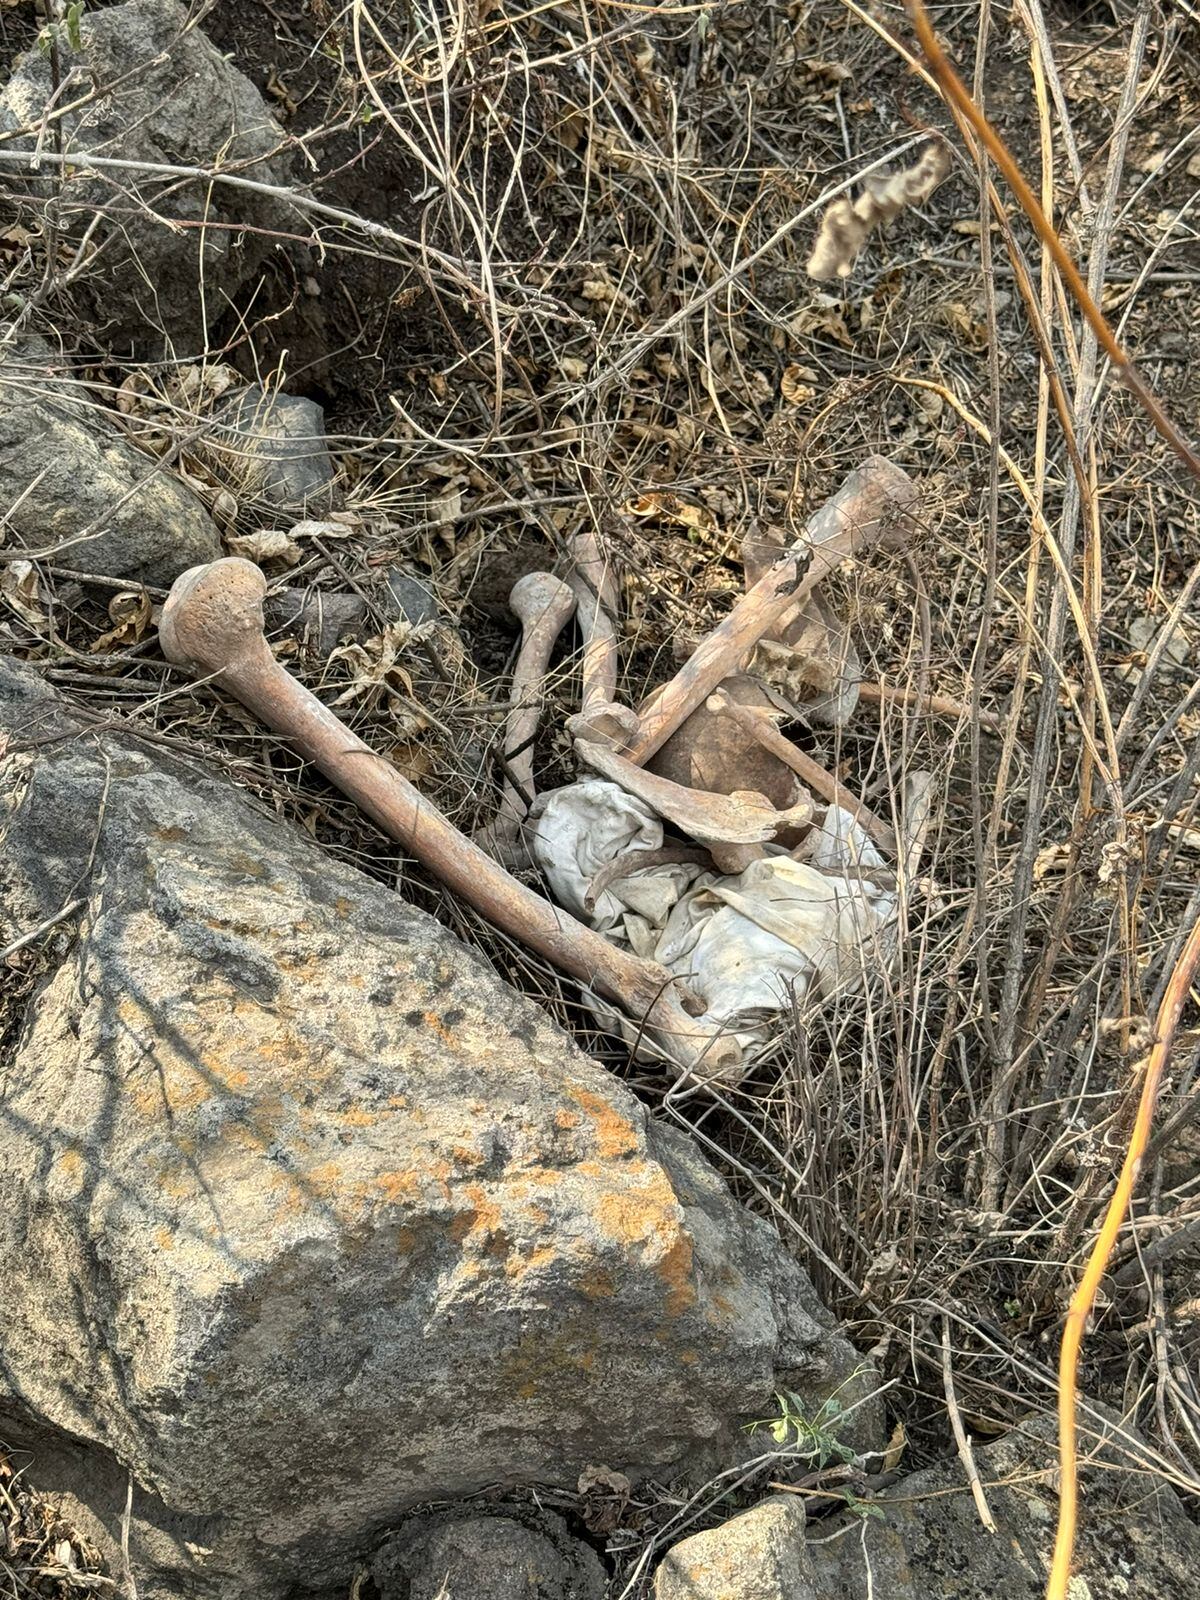 Ceci Flores asegura sí se encontraron posible restos humanos en Iztapalapa y muestra fotos